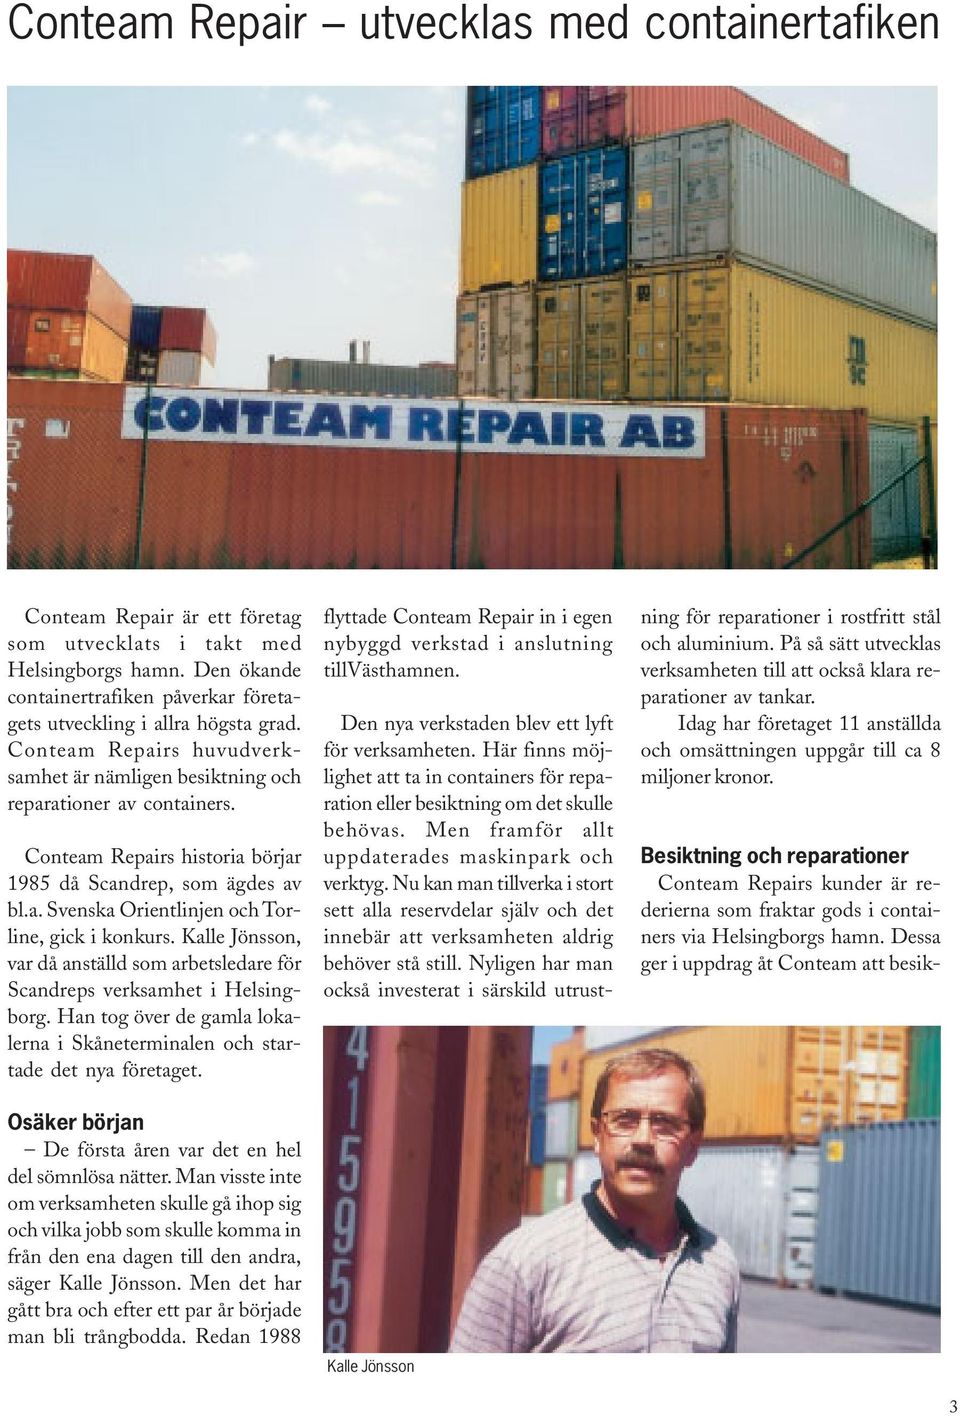 Conteam Repairs historia börjar 1985 då Scandrep, som ägdes av bl.a. Svenska Orientlinjen och Torline, gick i konkurs.